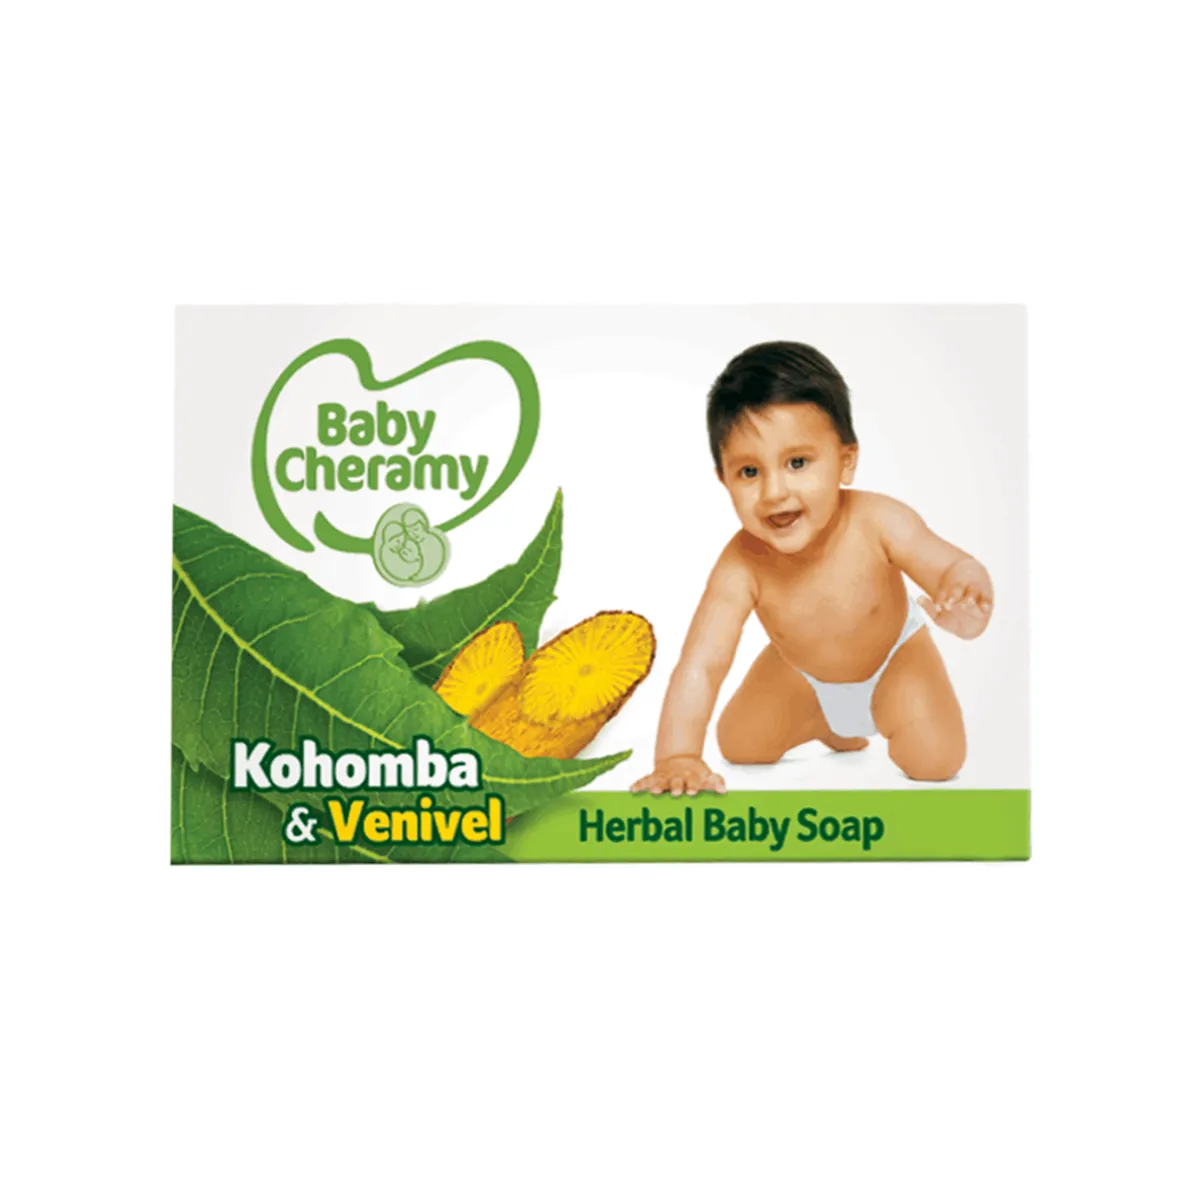 Baby Cheramy Kohomba and Venivel Soap 100g